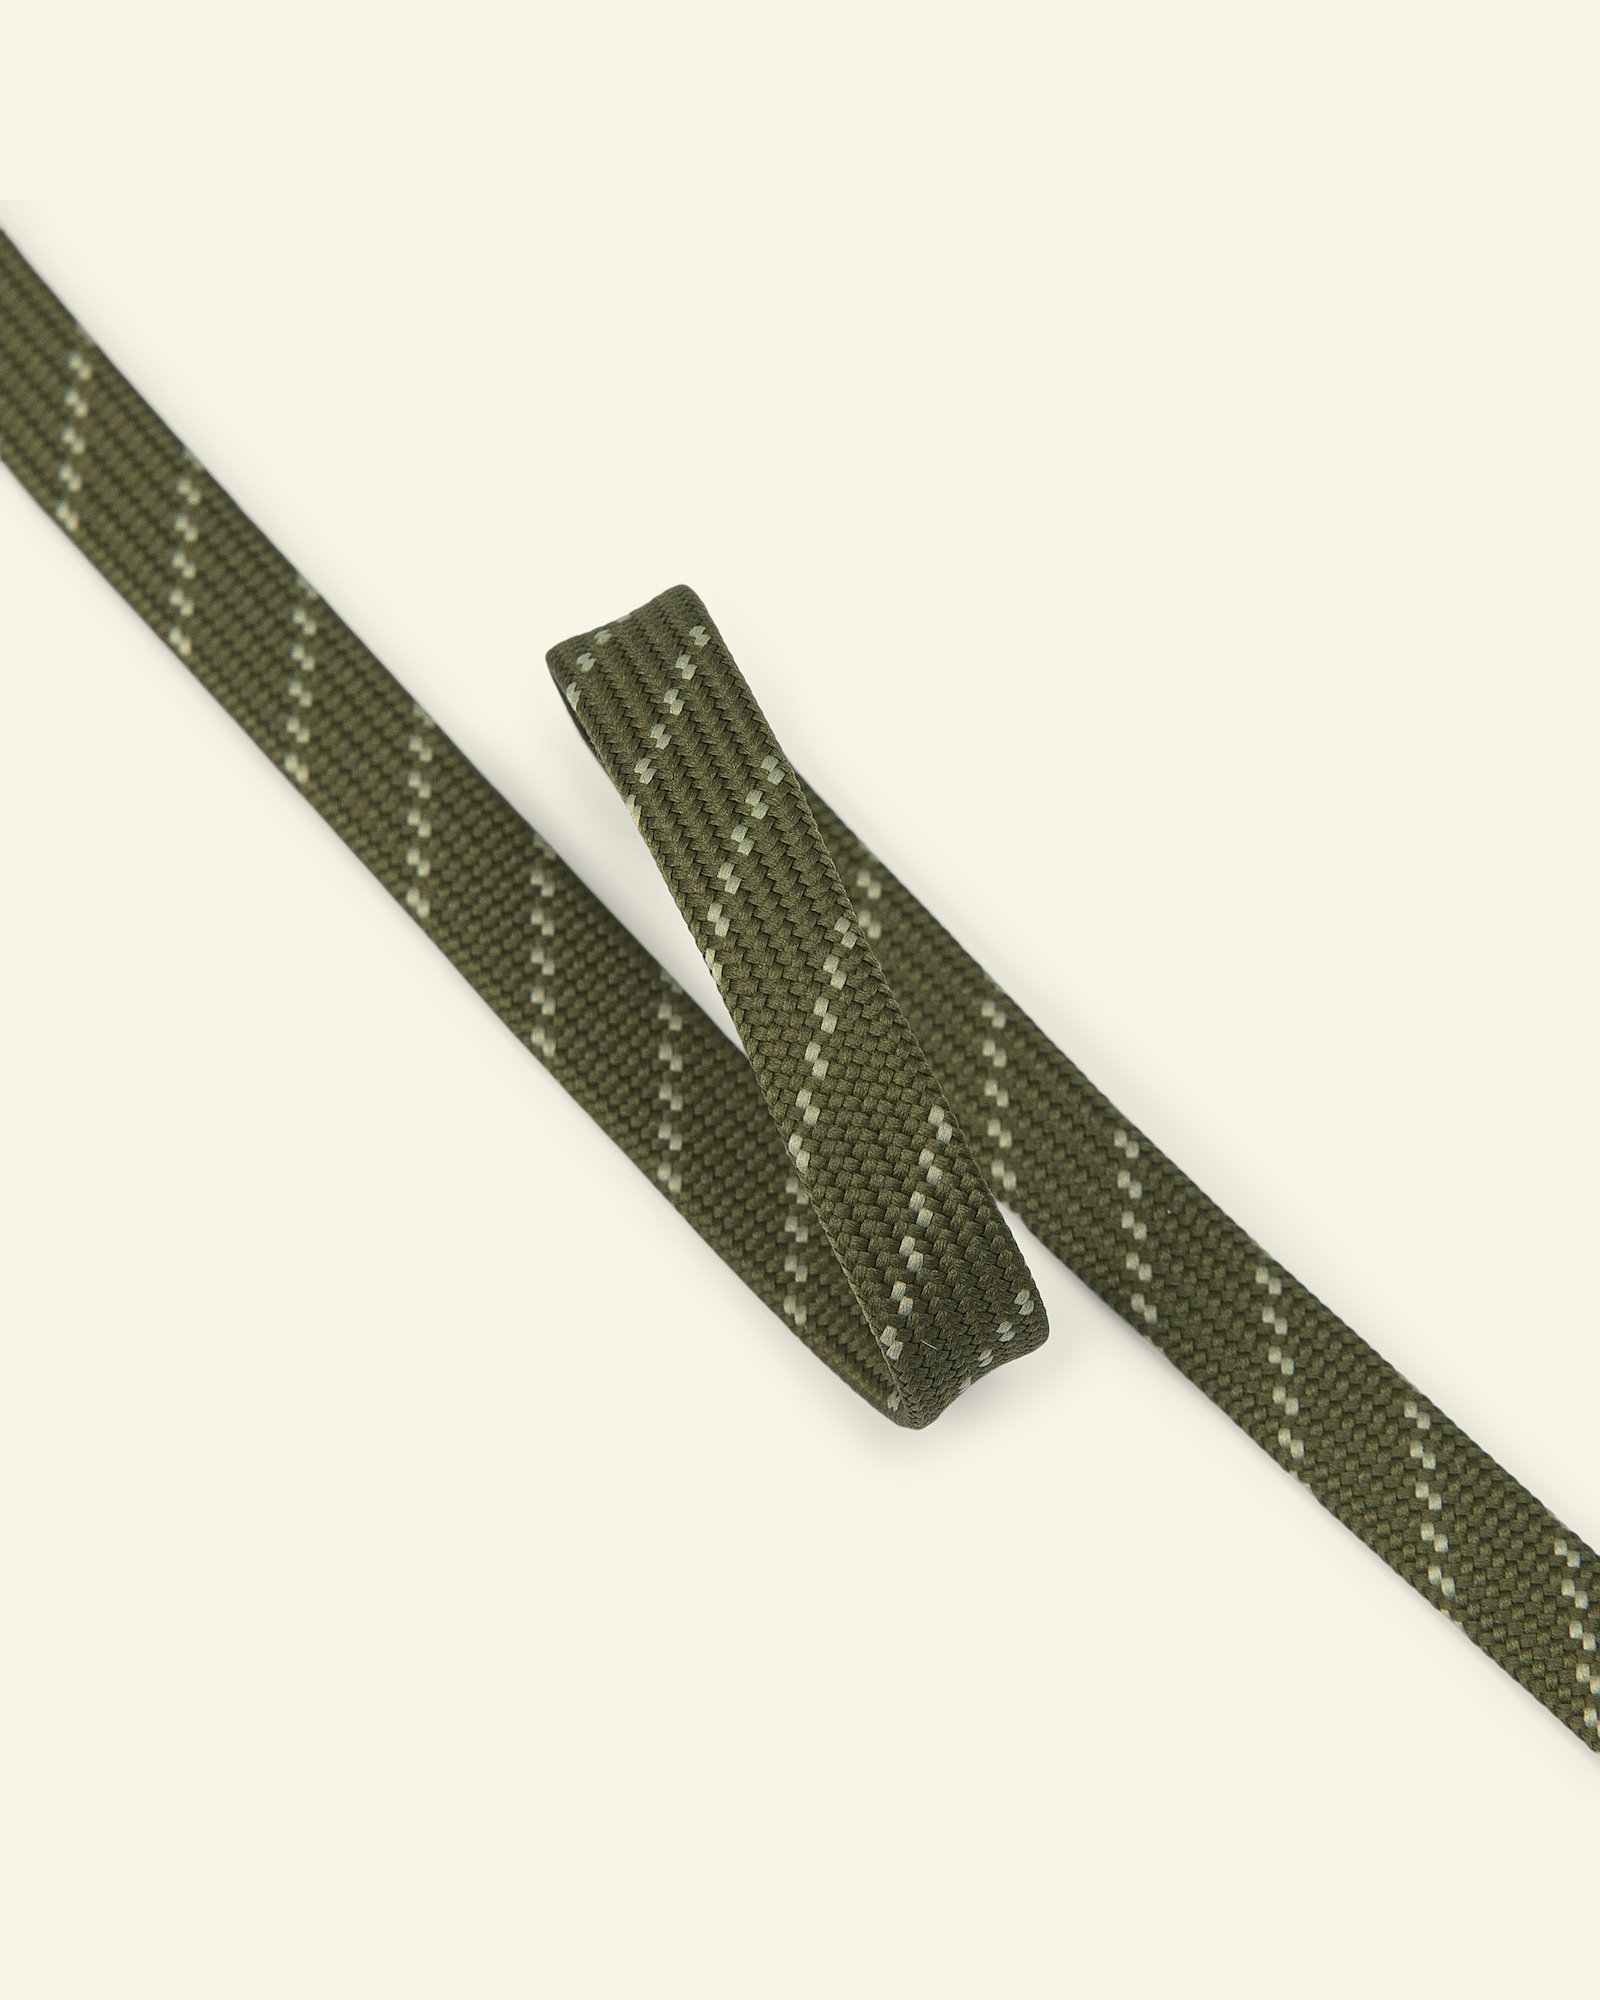 Slangebånd 10 mm grønt/naturligt, 2 m 22426_pack